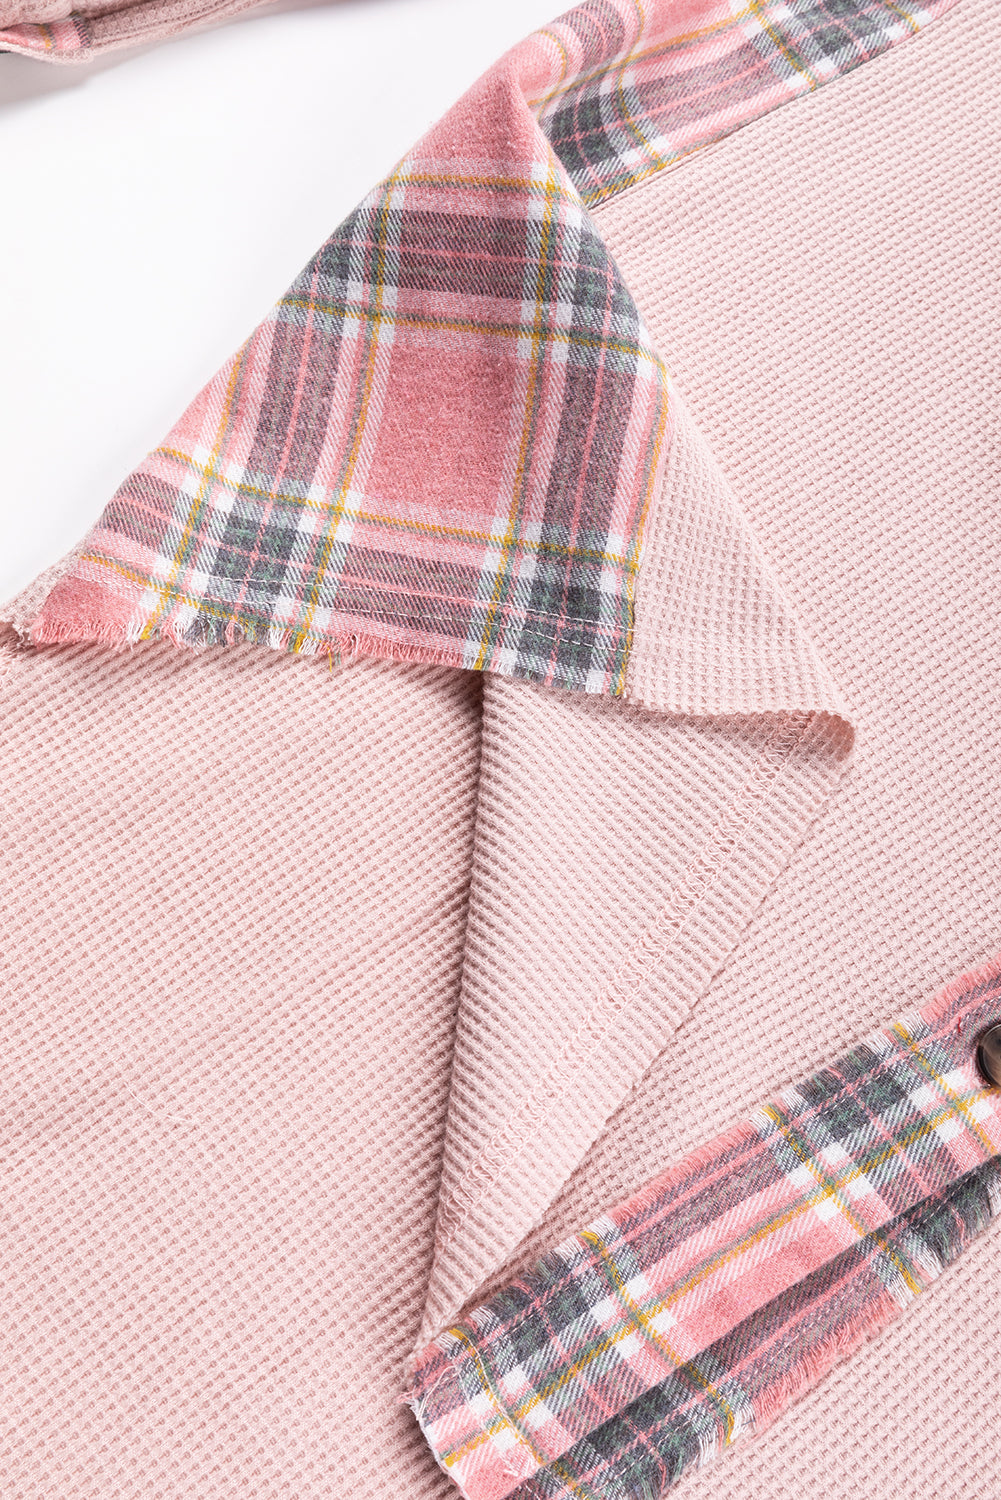 Veste surdimensionnée en tricot gaufré haut et bas à carreaux rose abricot